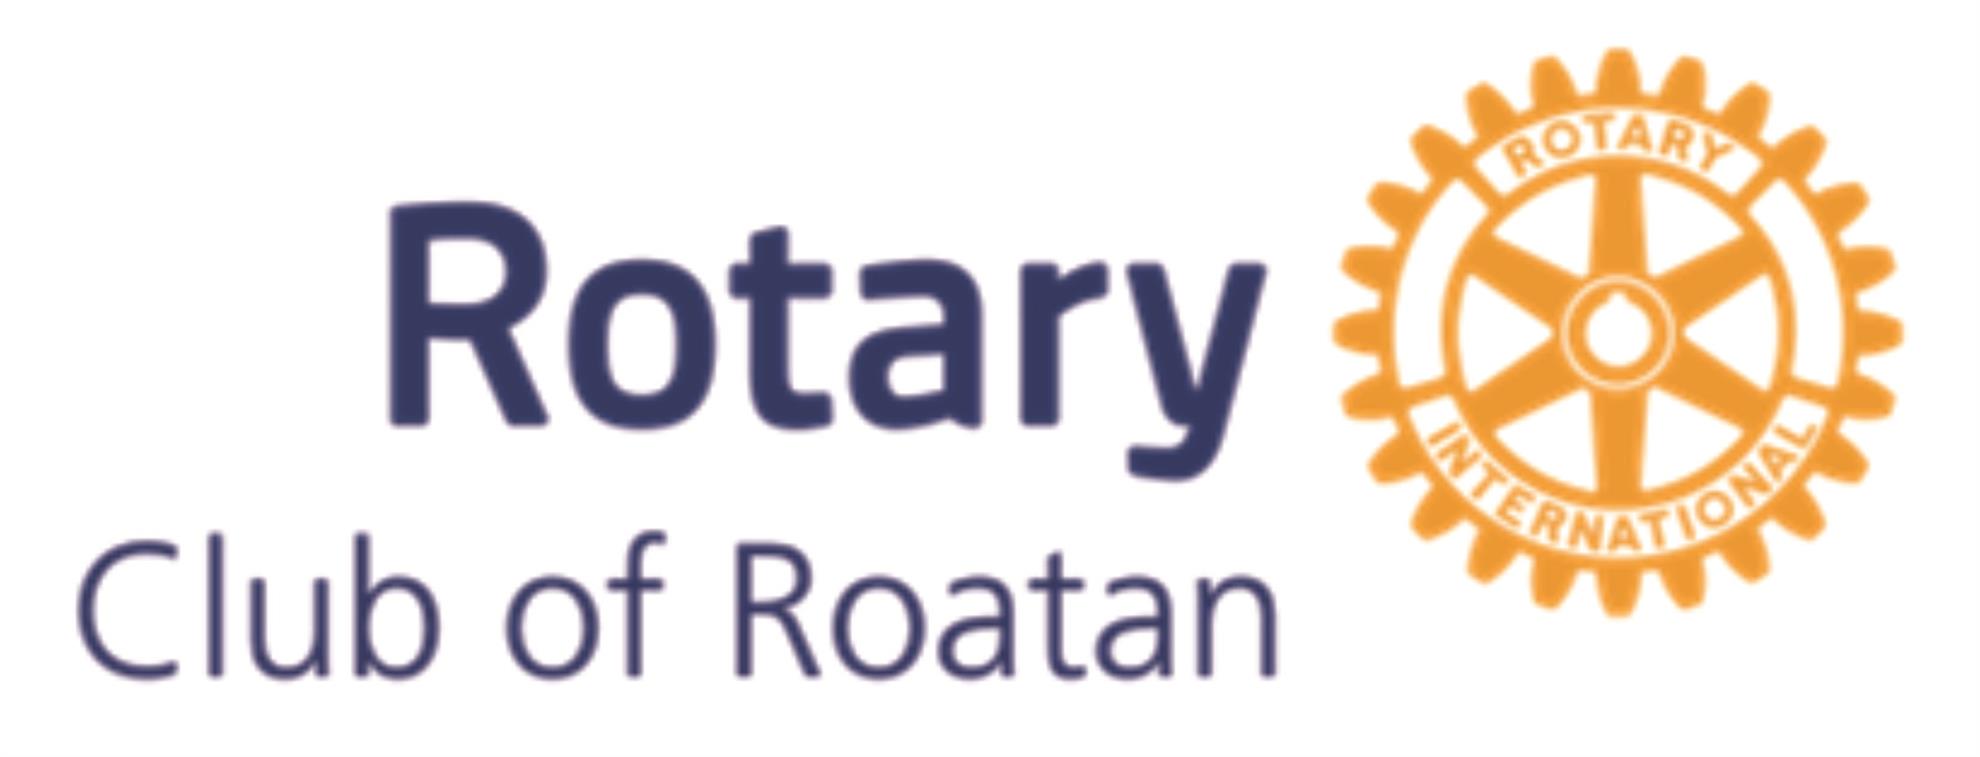 Roatan logo